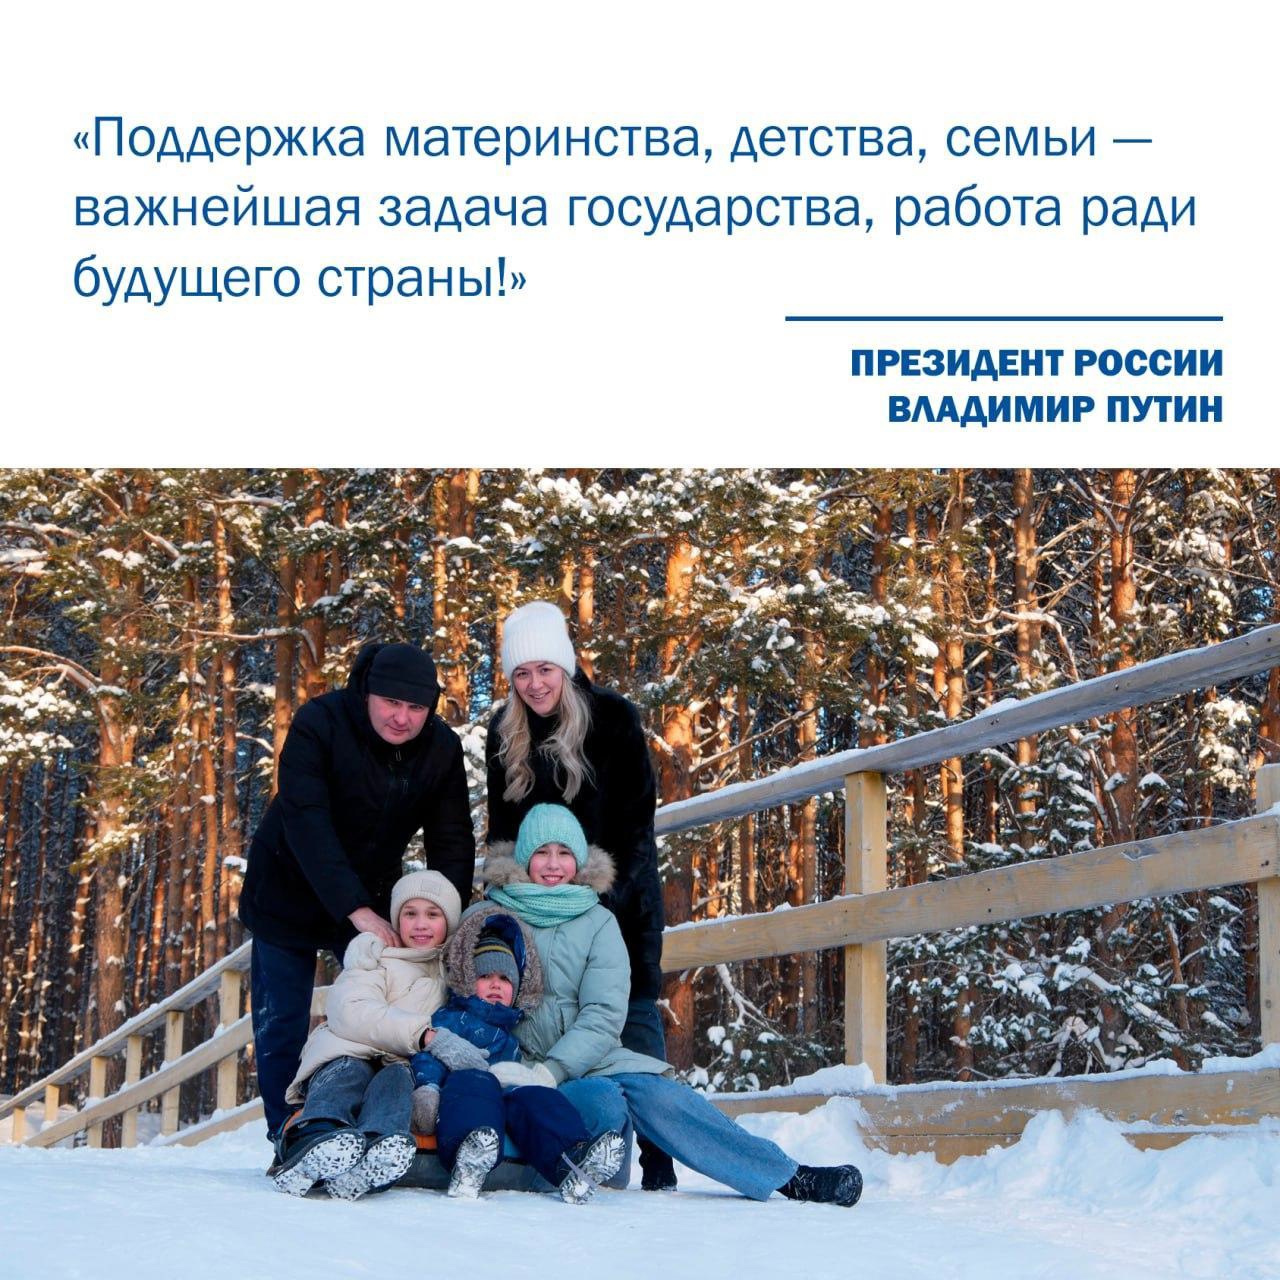 Губернатор Кузбасса предложил провести конкурс песен, посвященных семье